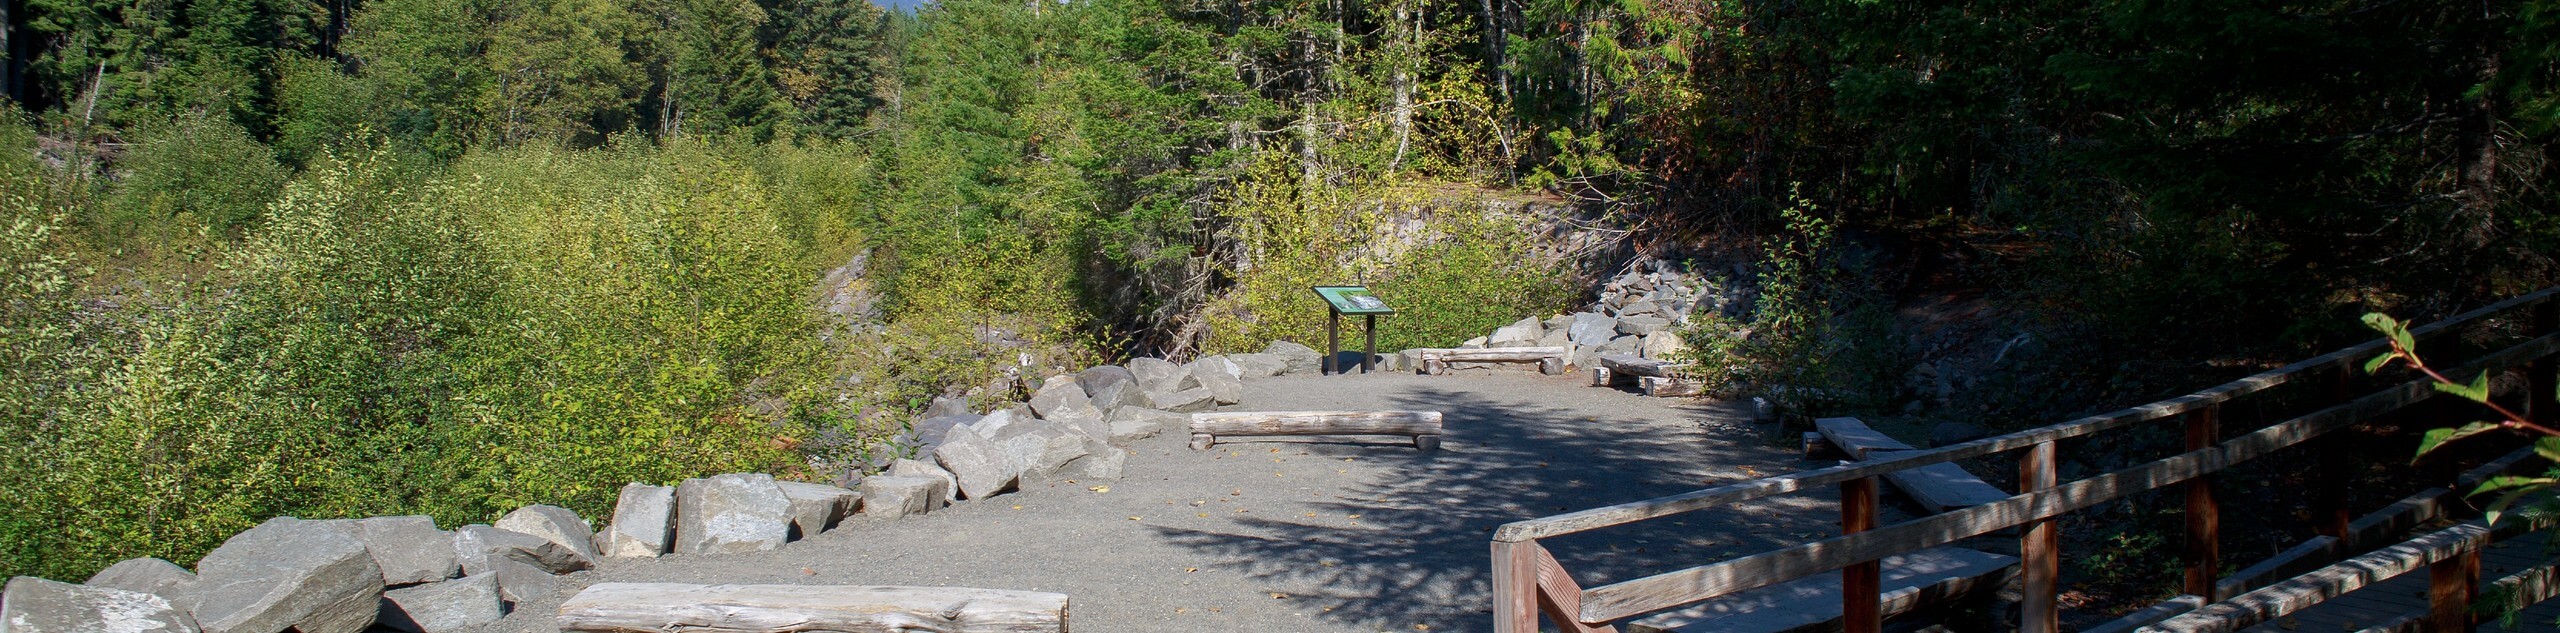 Kautz Creek Trail